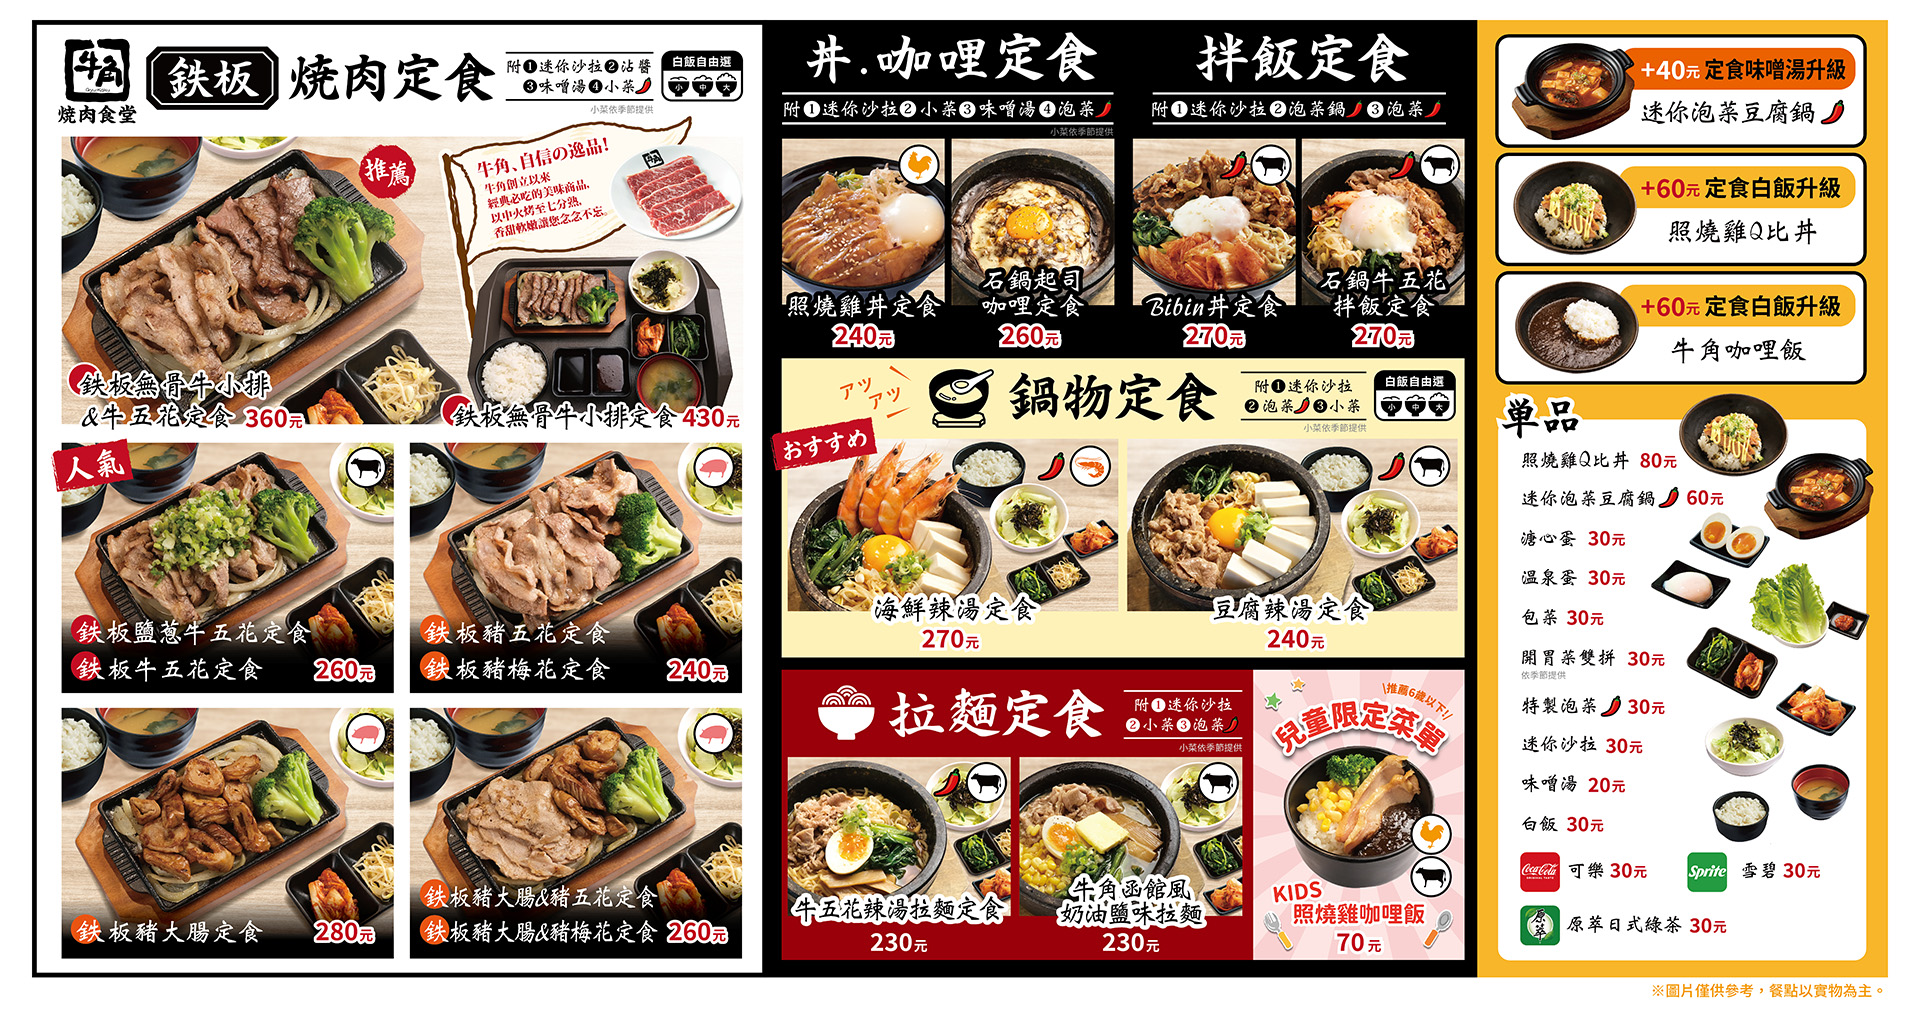 台北中山燒肉「牛角燒肉食堂」菜單一覽表